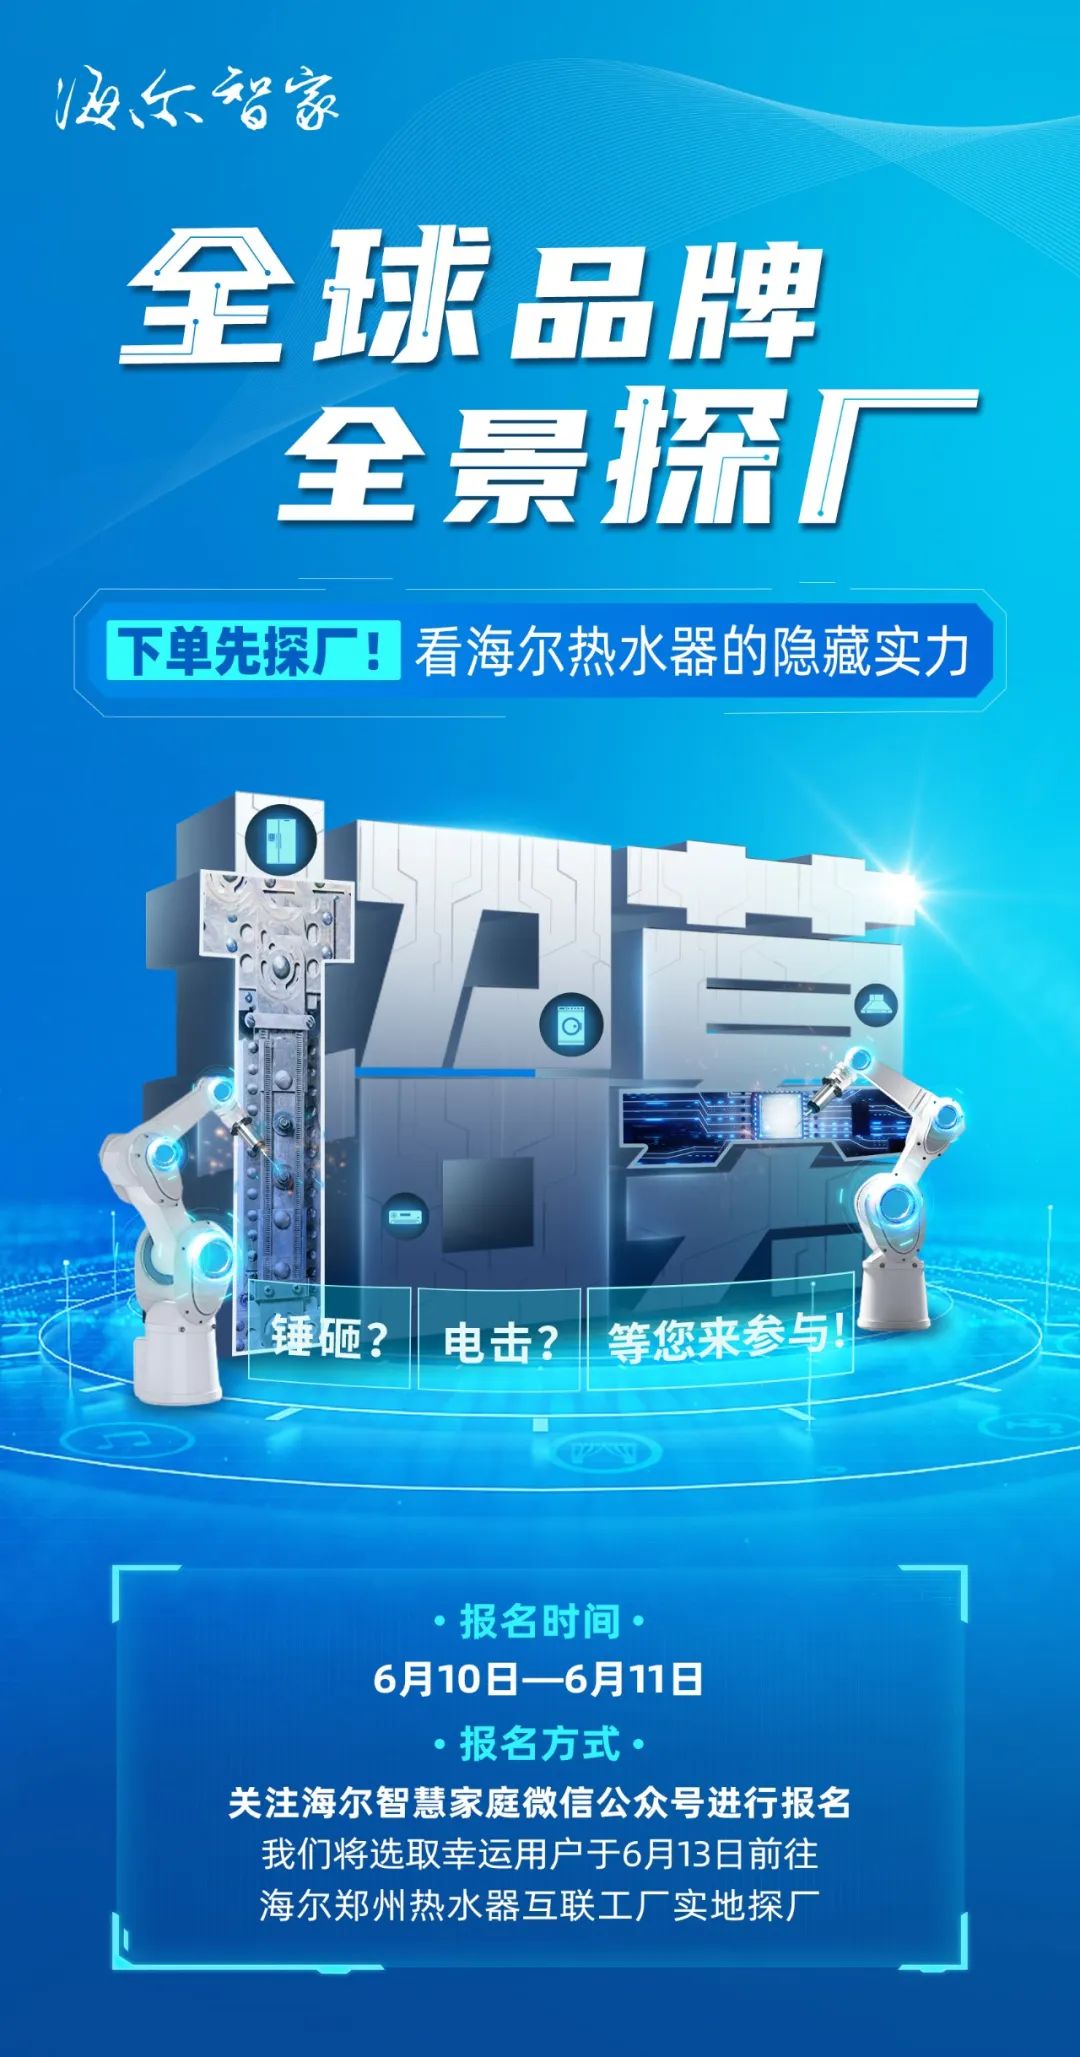 海尔热水器邀您“探厂”，第一站走进郑州互联工厂